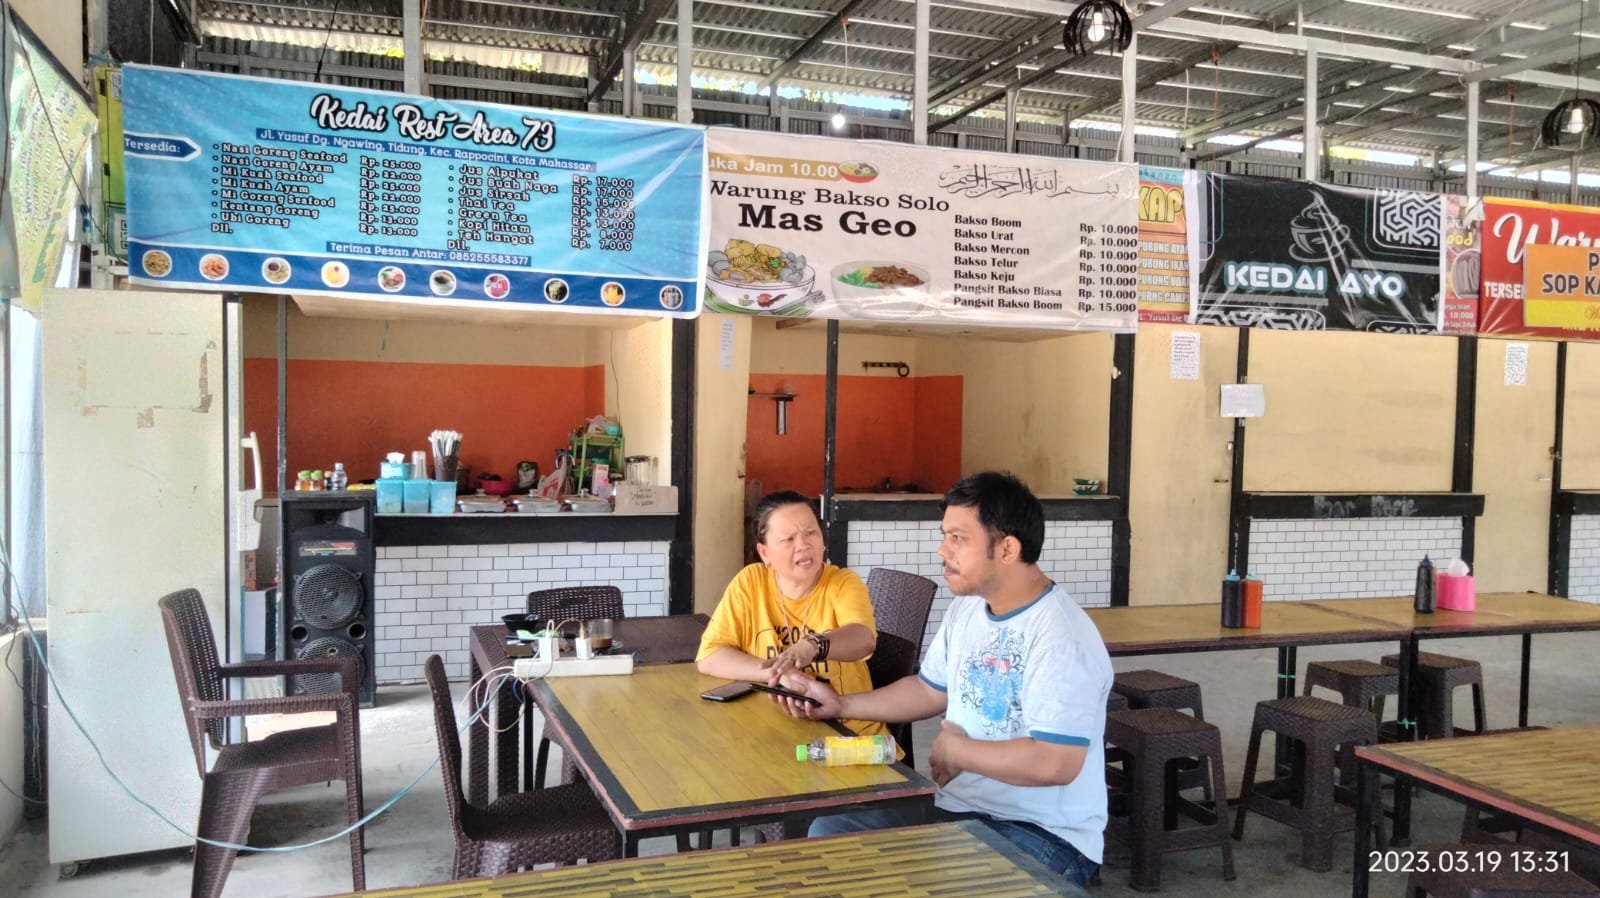 Kedai Rest Area 73 Siapkan Makan Minum Buka Puasa dan Sahur Dengan Harga Serba Rp 10.000